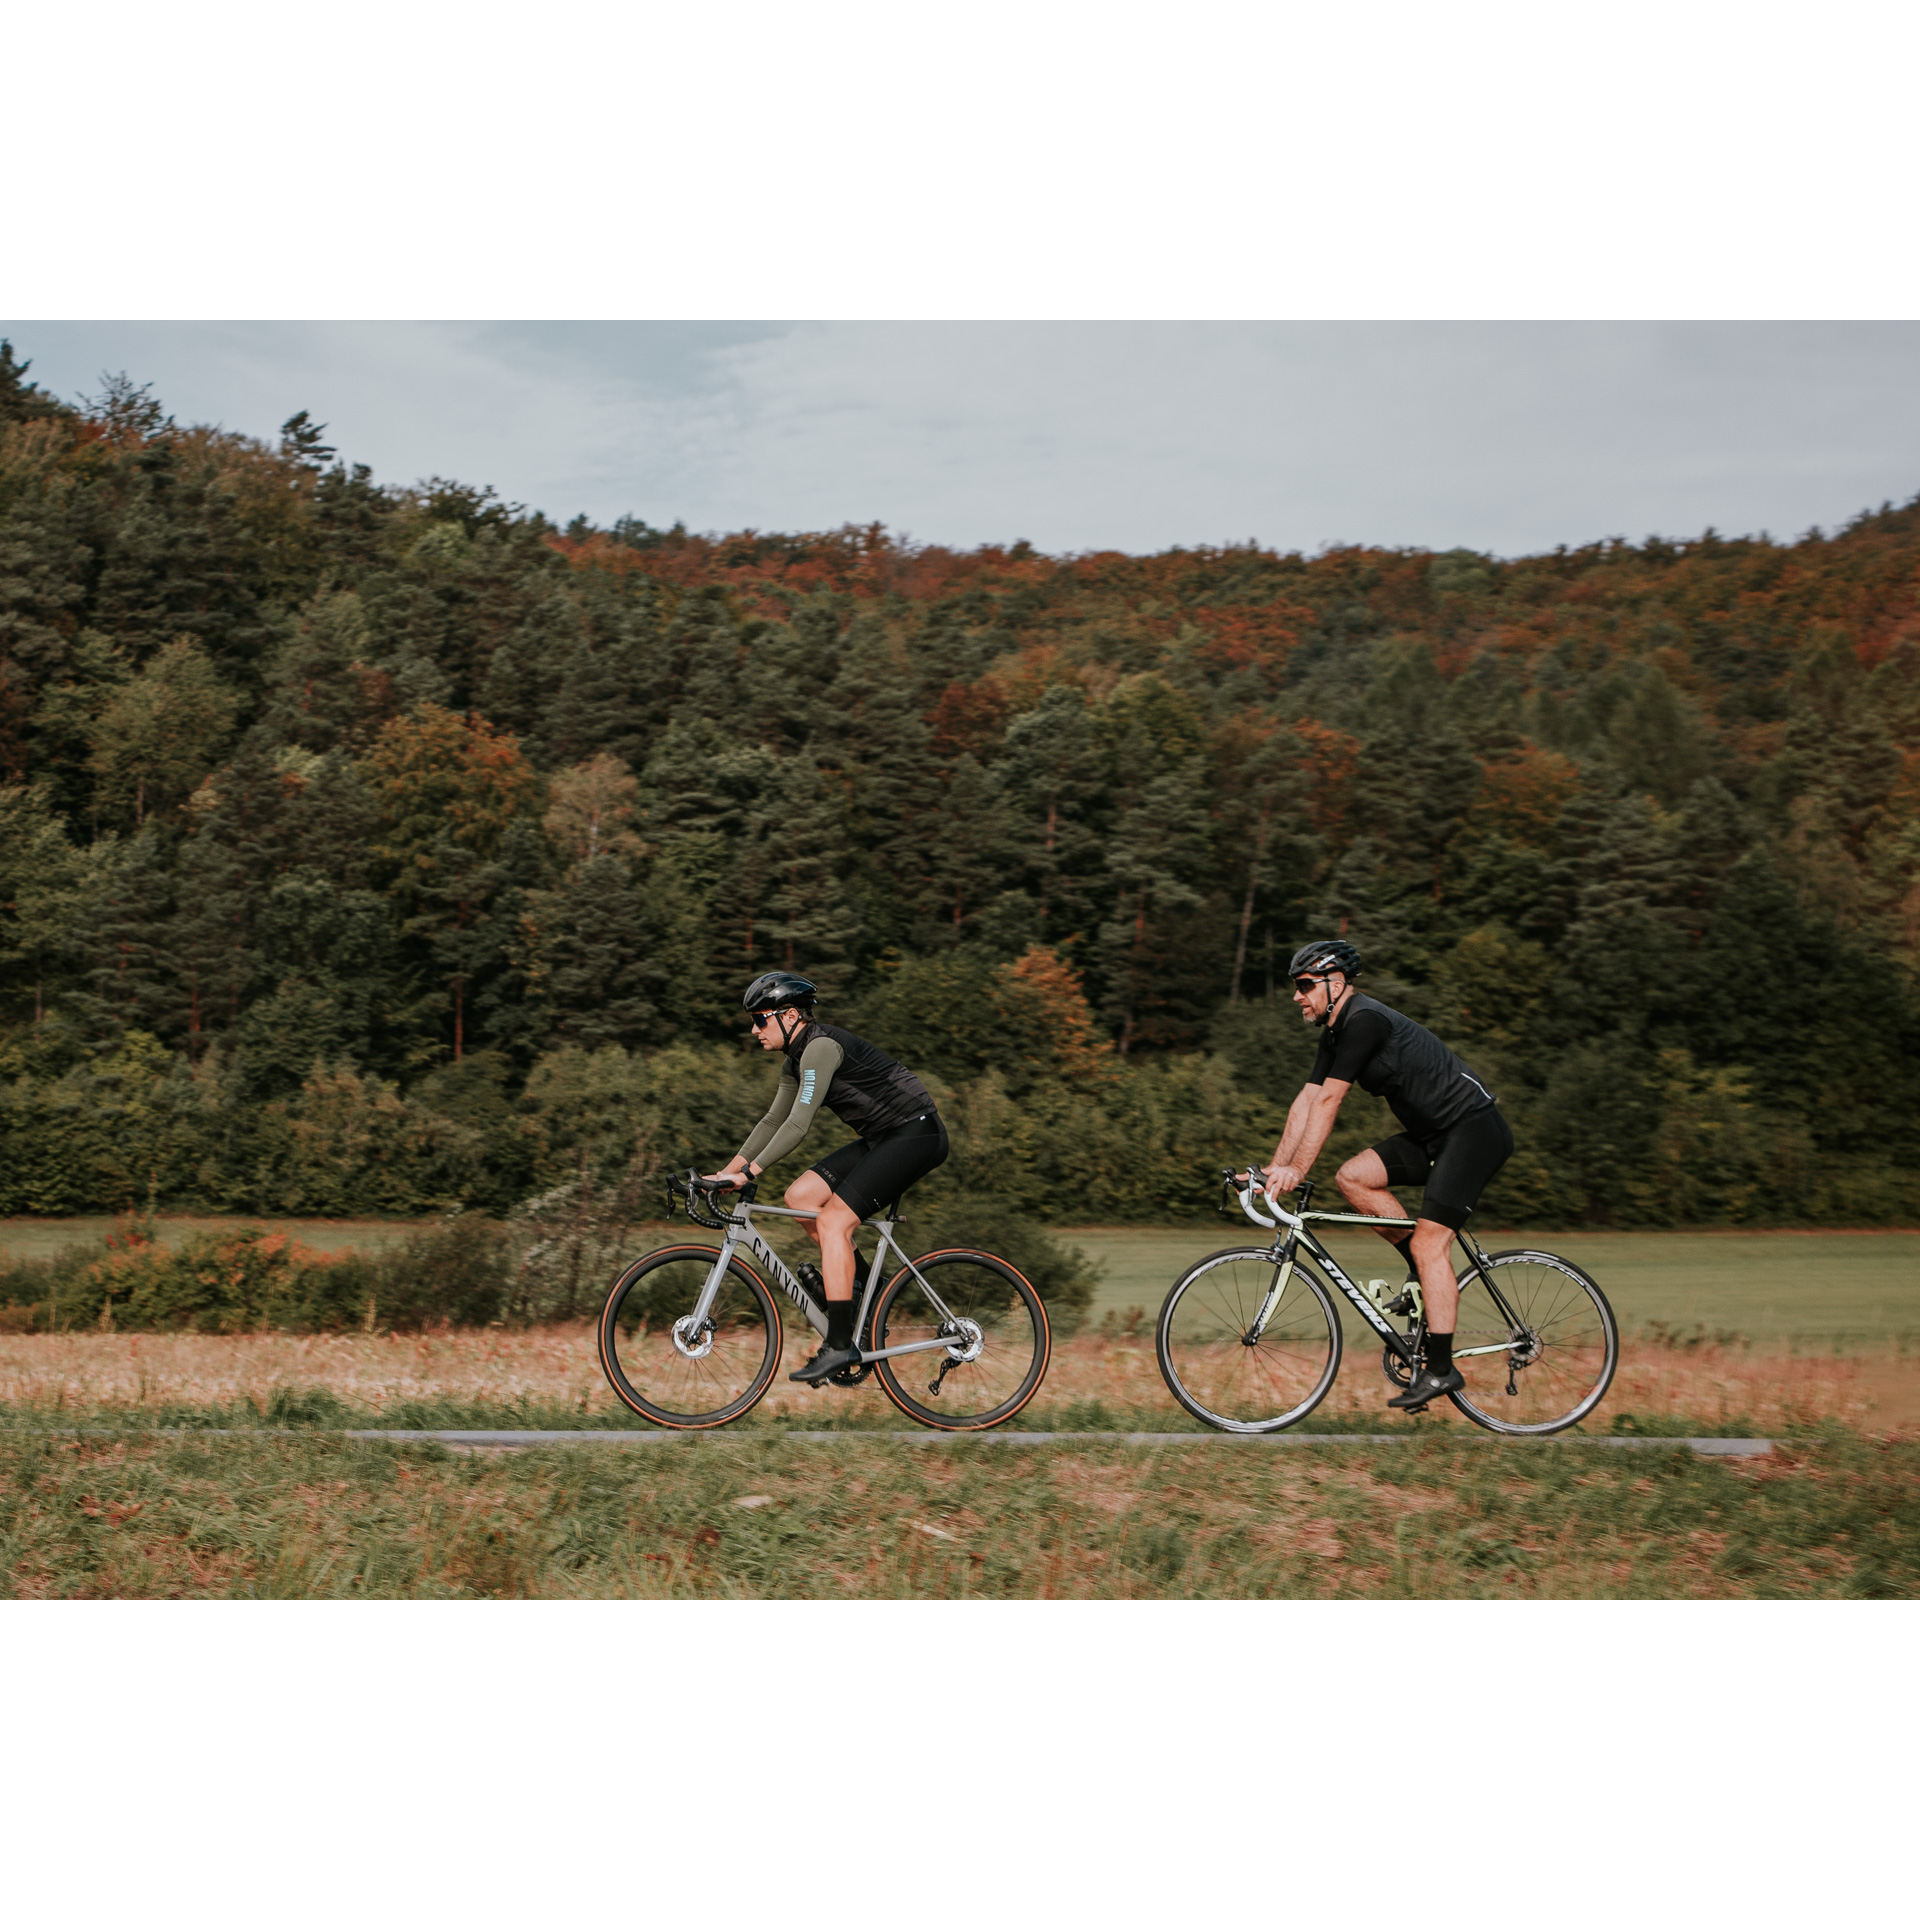 Dwóch rowerzystów w czarnych strojach kolarskich i kaskach jadących po asfaltowej drodze biegnącej między zielonymi łąkami, w tle drzewa na wzgórzu